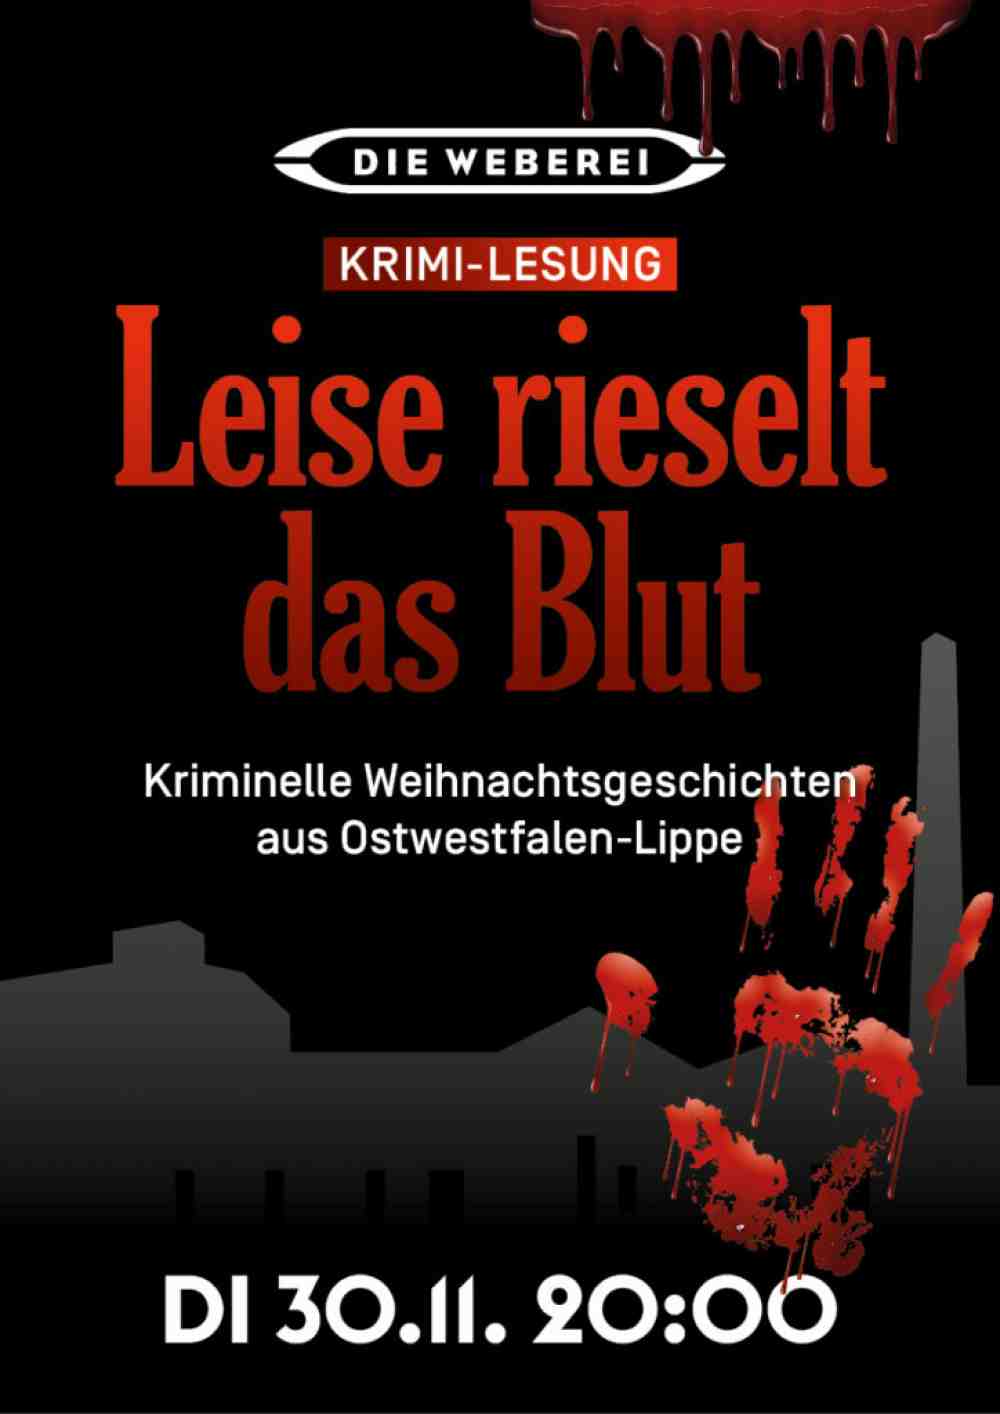 Die Weberei Gütersloh: Krimi-Lesung »Leise rieselt das Blut«